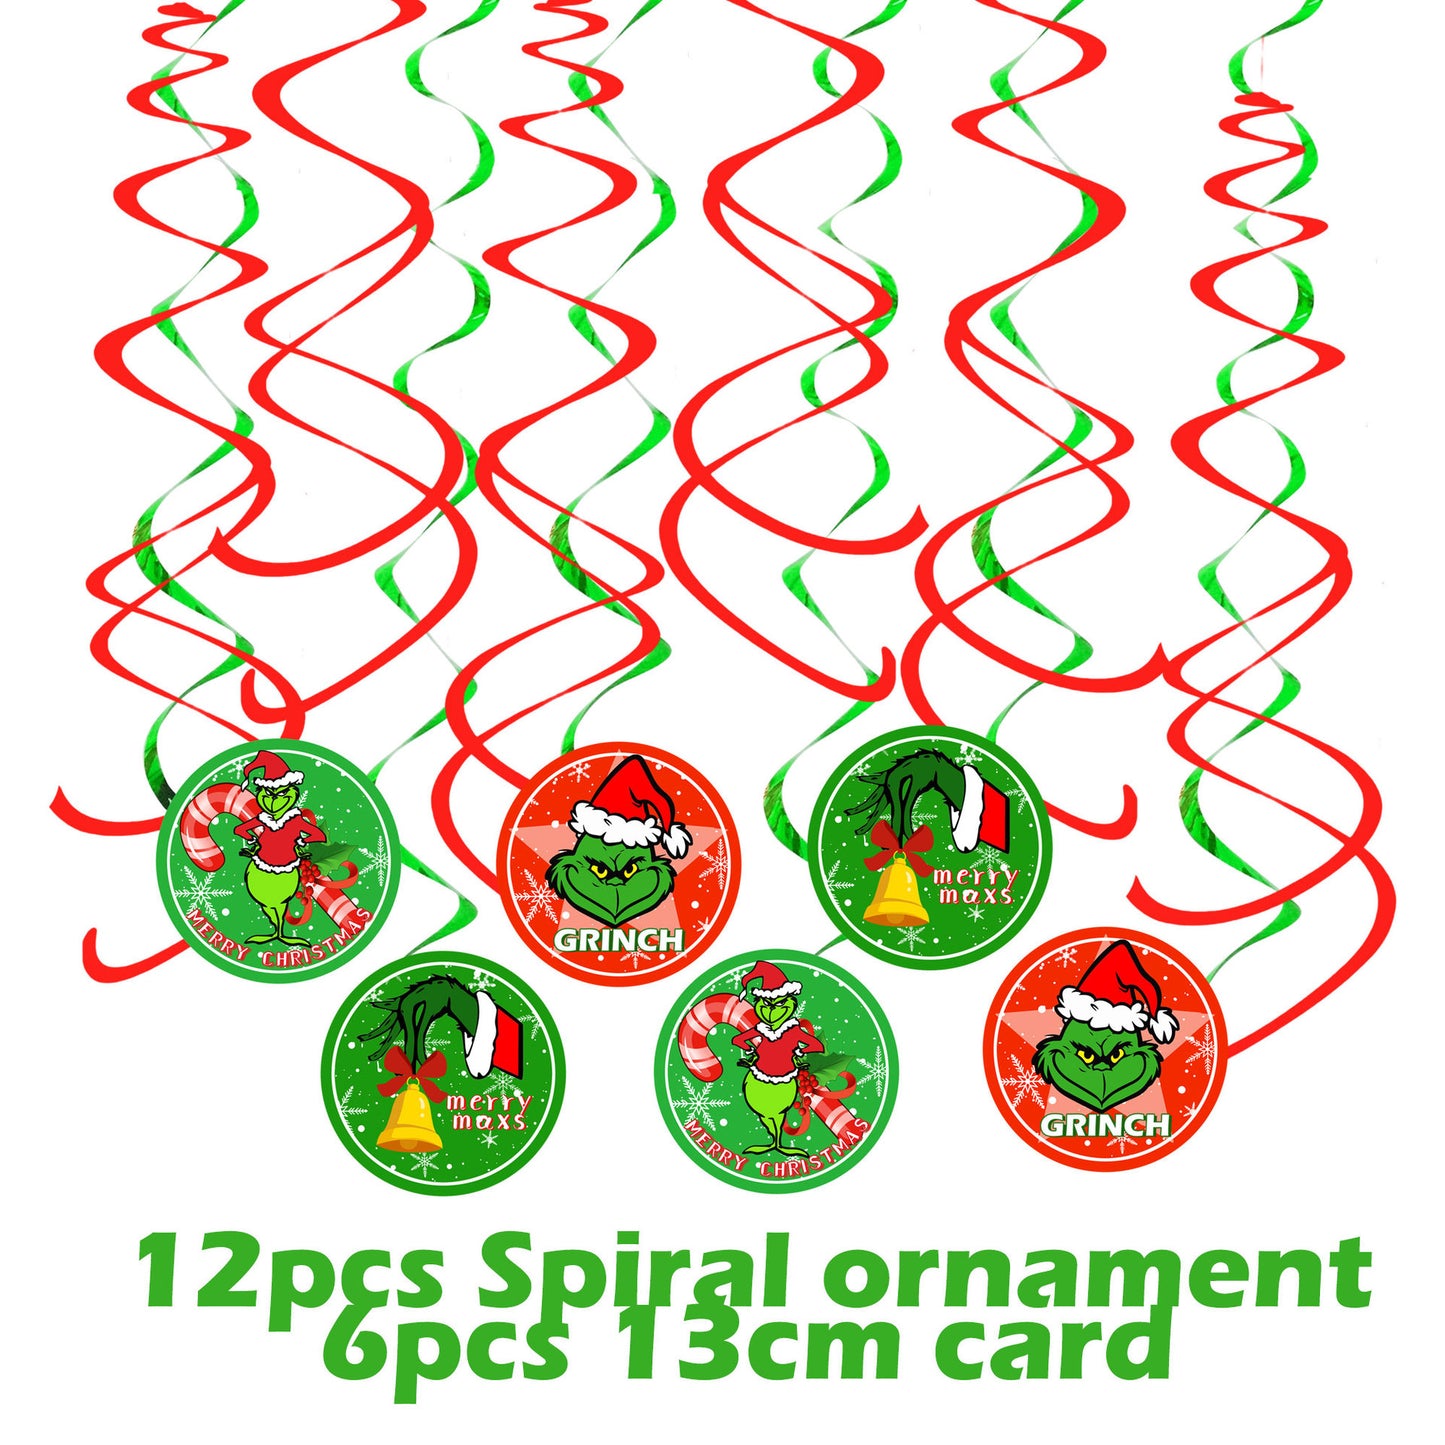 聖誕怪傑Grinch主題裝飾 聖誕節派對拉旗橫幅氣球生日蛋糕插套裝 (2套起批)